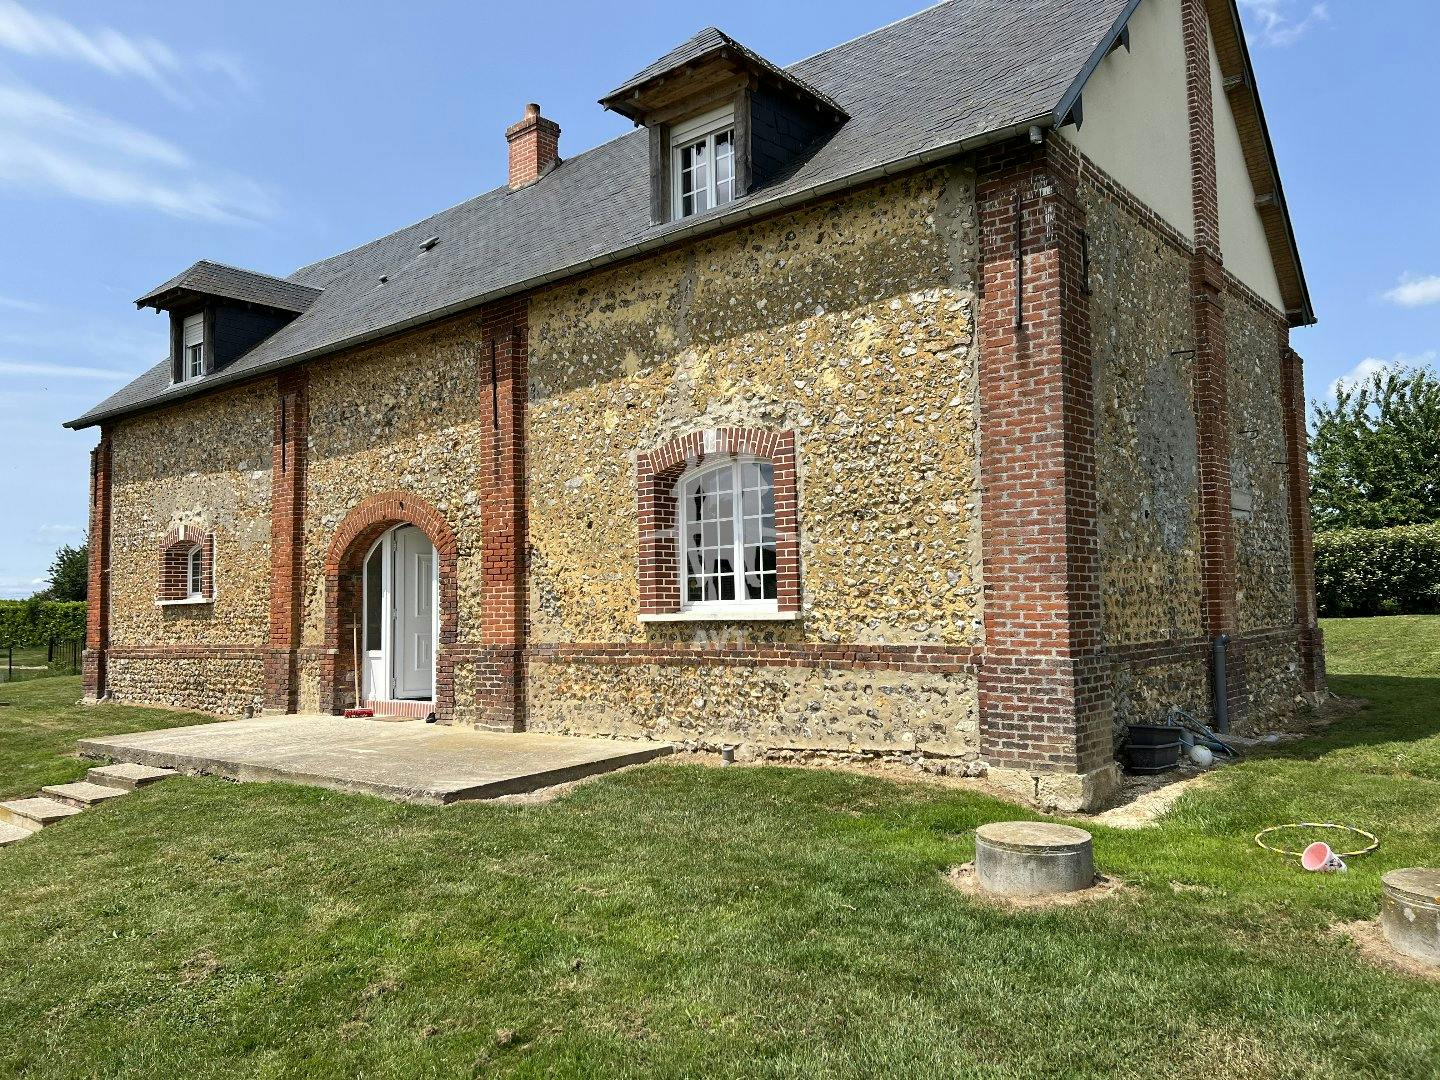 A vendre ,  Les Andelys ( Eure )  maison ,  180 m2 habitables   ,  6 pièces , 4 chambres , terrain 2320 m2